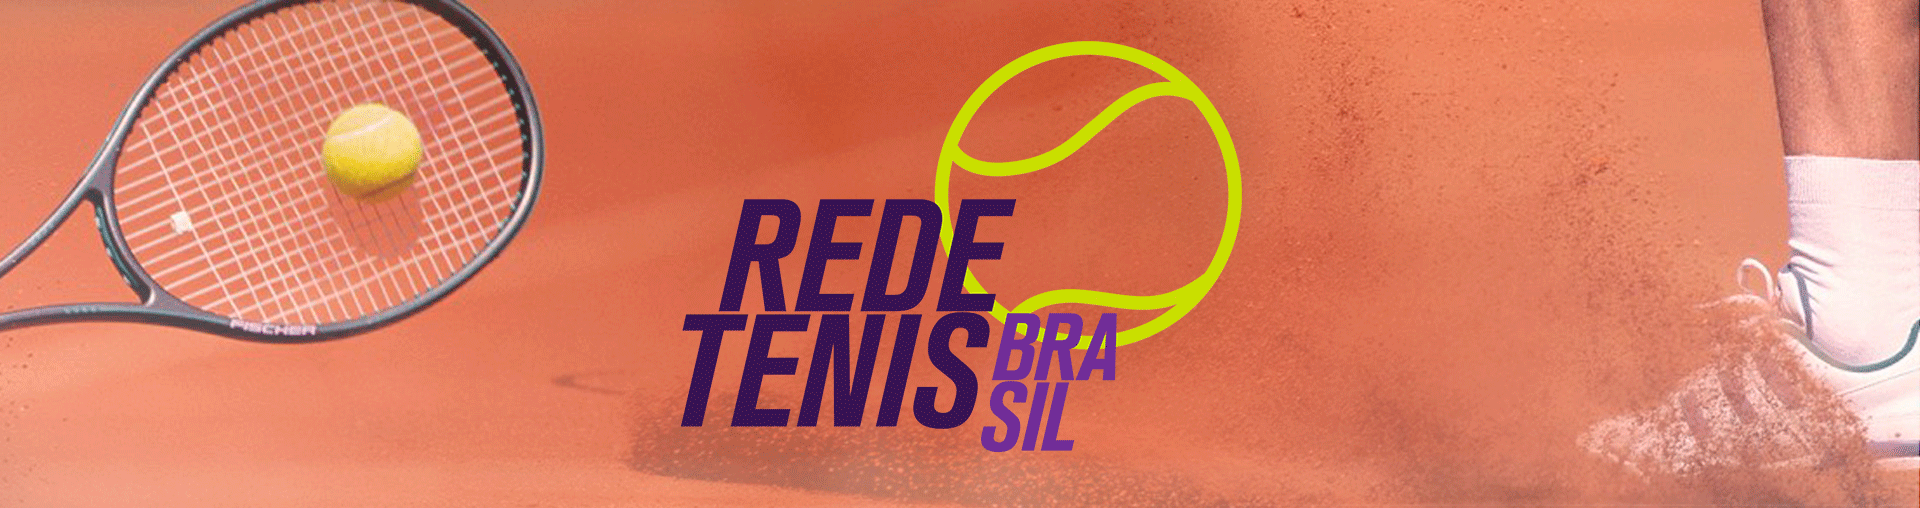 Na imagem, Logo da Rede Tênis de Brasil, com a raquete e uma bola de tênis logo atrás.